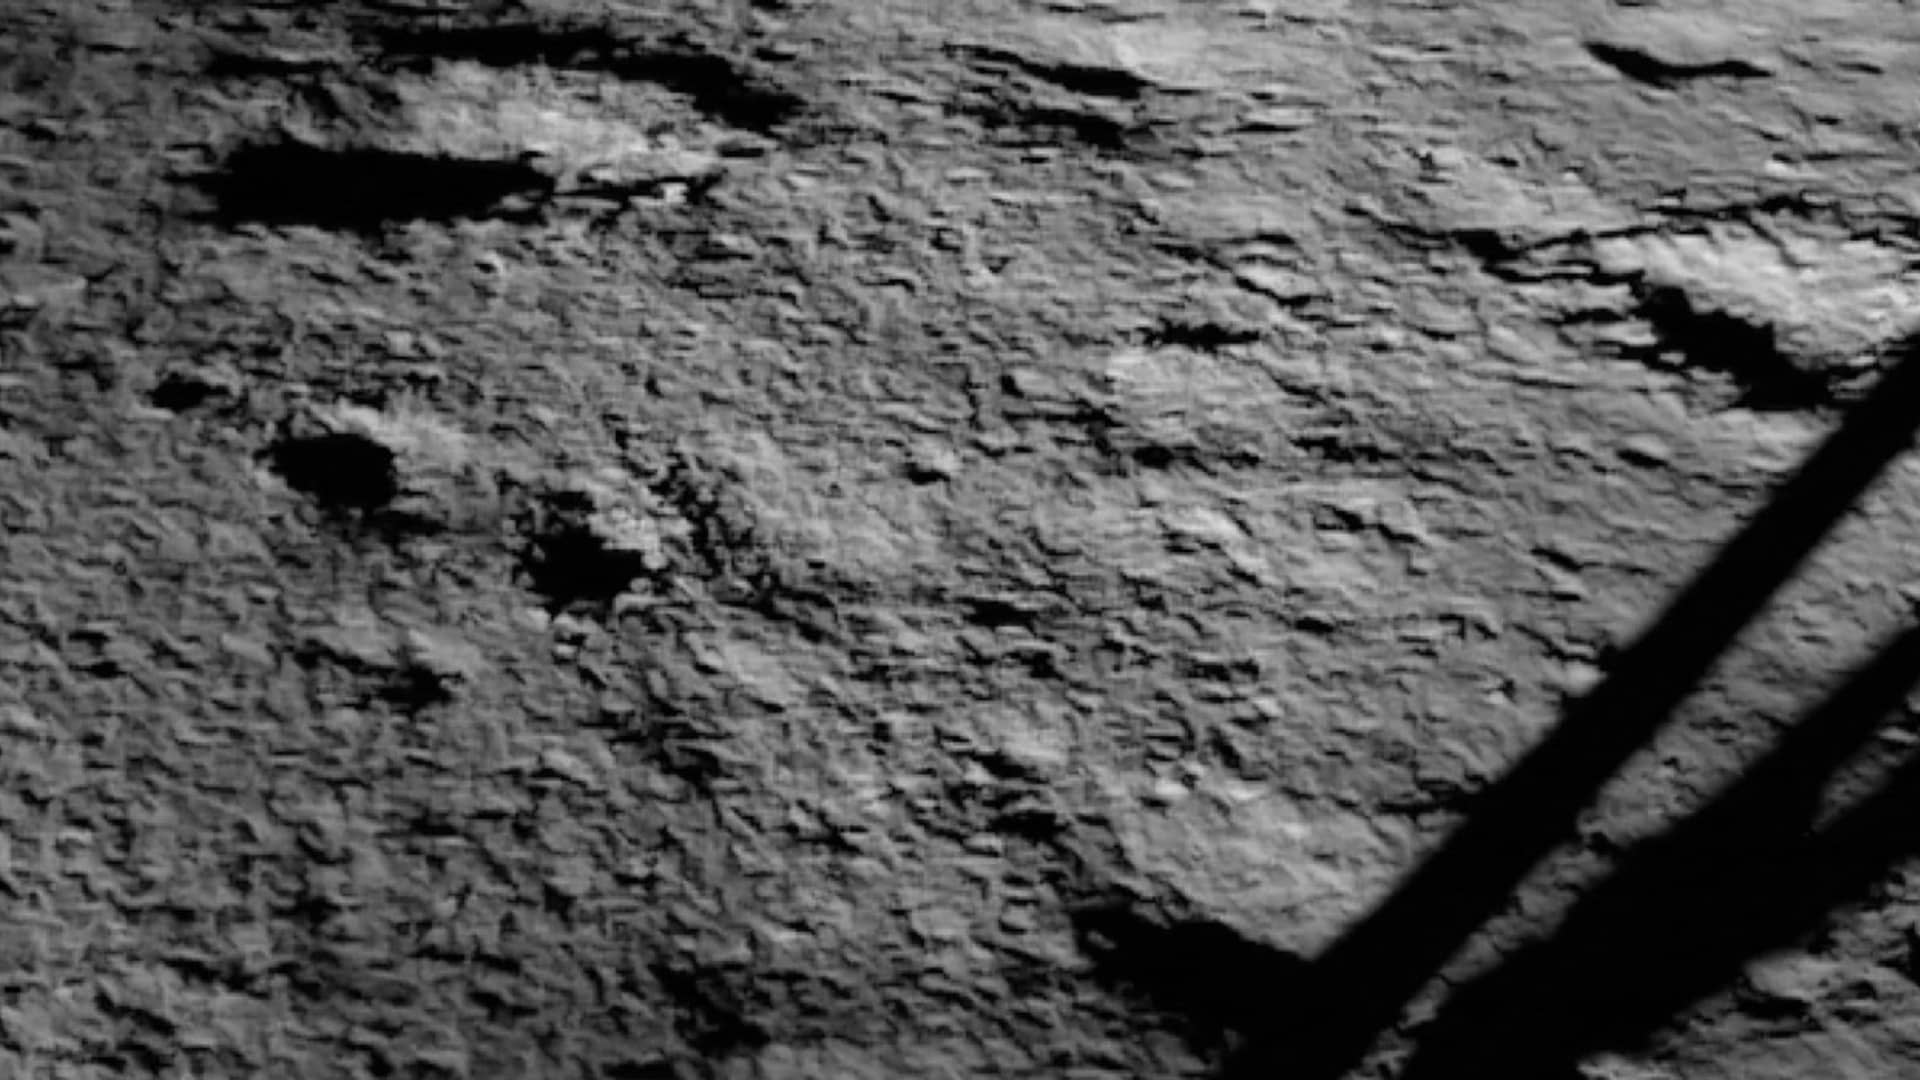 India Chandrayaan-3 moon landing came at low cost